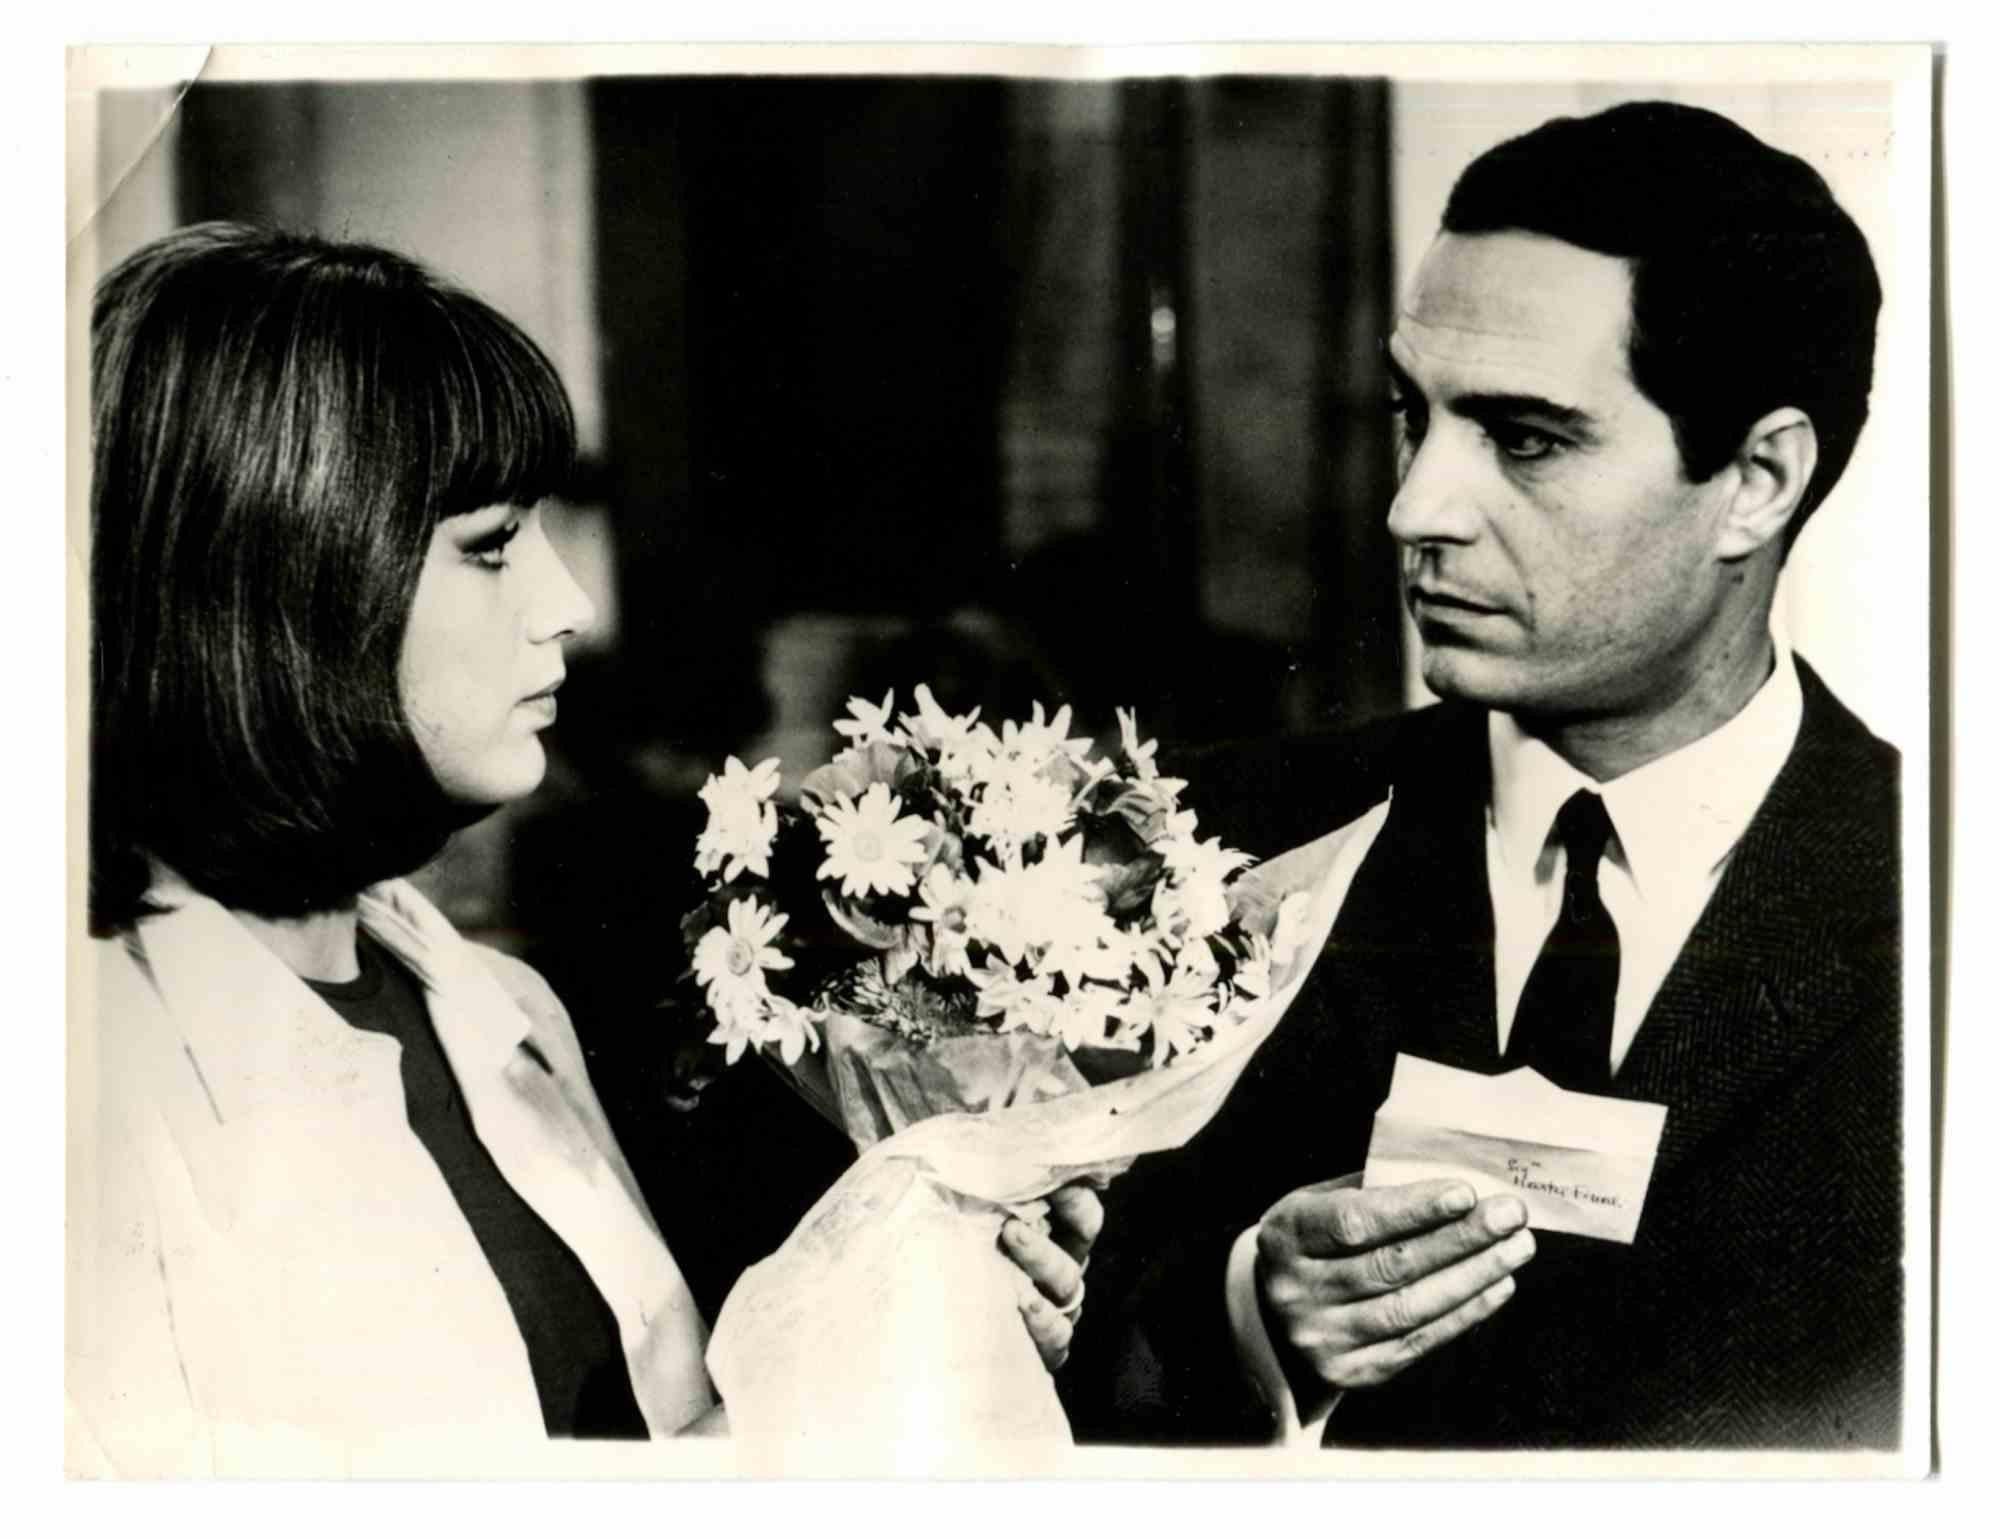 Nino Manfredi and Stefania Sandrelli - Photo - 1960s